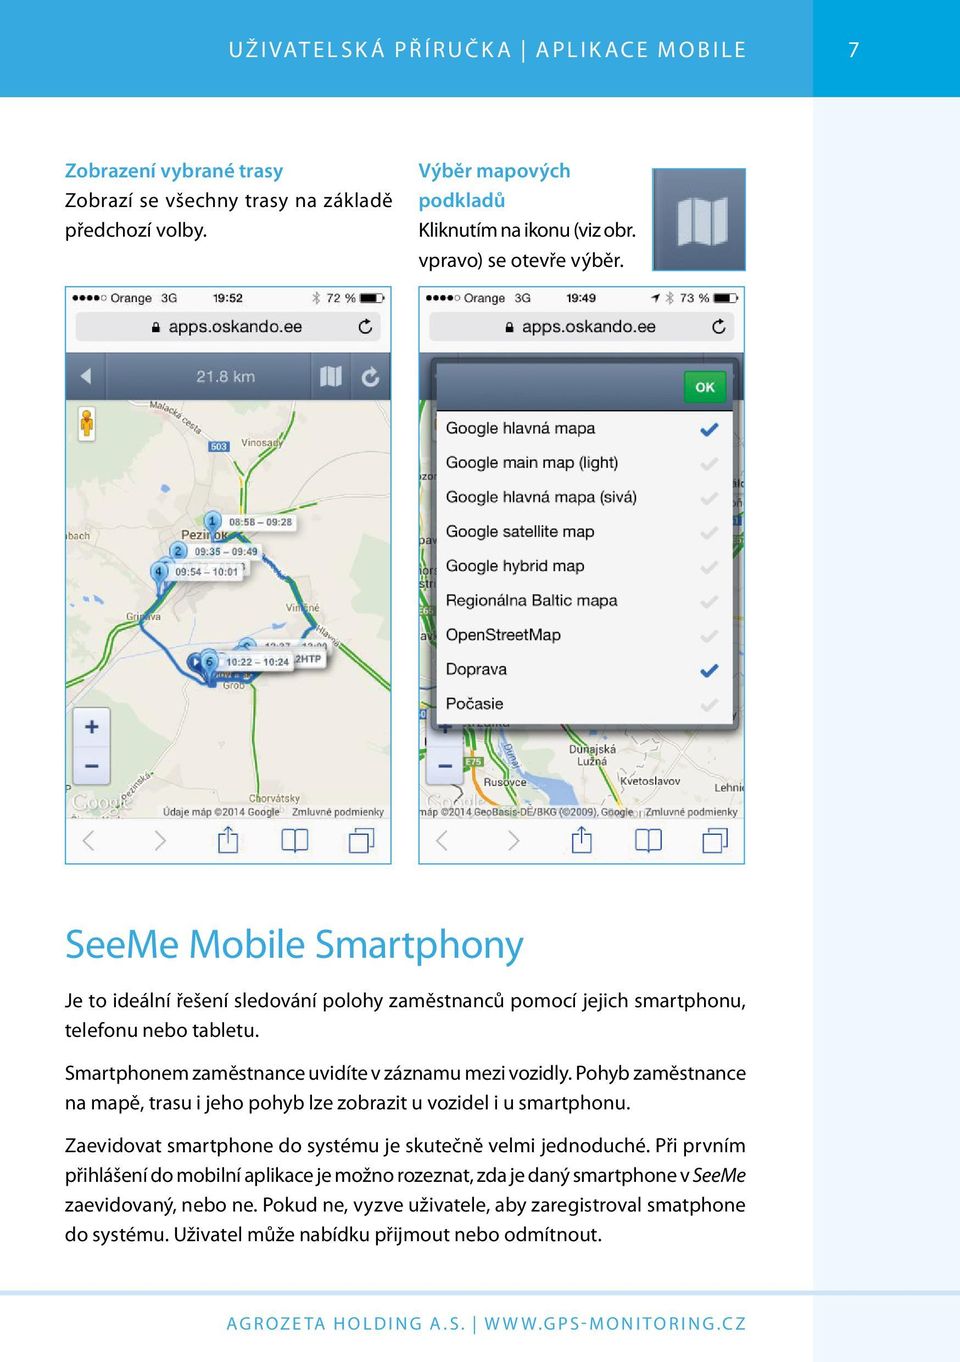 Smartphonem zaměstnance uvidíte v záznamu mezi vozidly. Pohyb zaměstnance na mapě, trasu i jeho pohyb lze zobrazit u vozidel i u smartphonu.